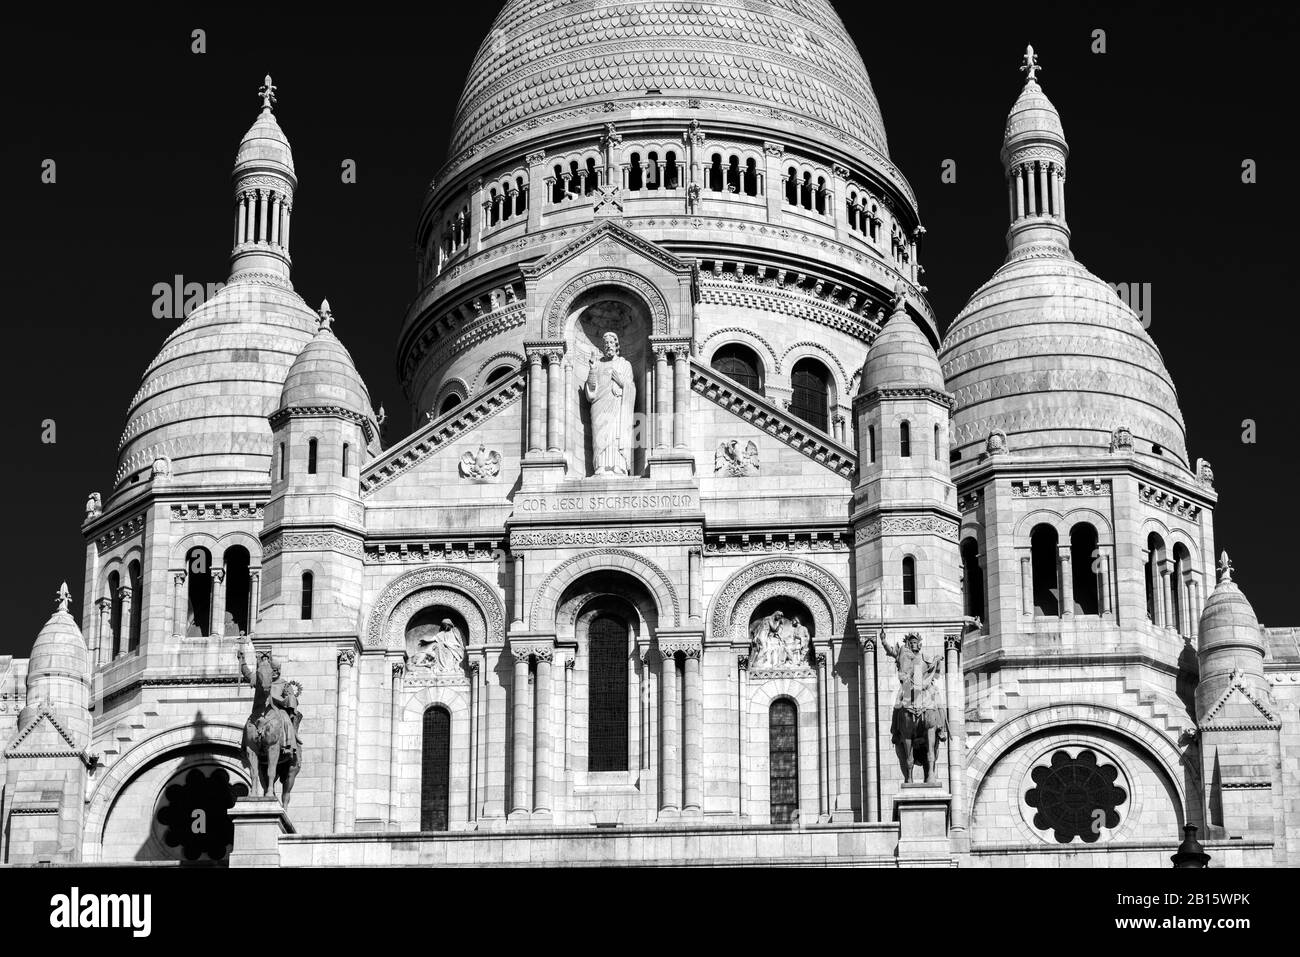 La basilique du Sacré-Cœur de Jésus (Basilique du Sacré-Cœur) sur la colline de Montmartre, Paris Banque D'Images